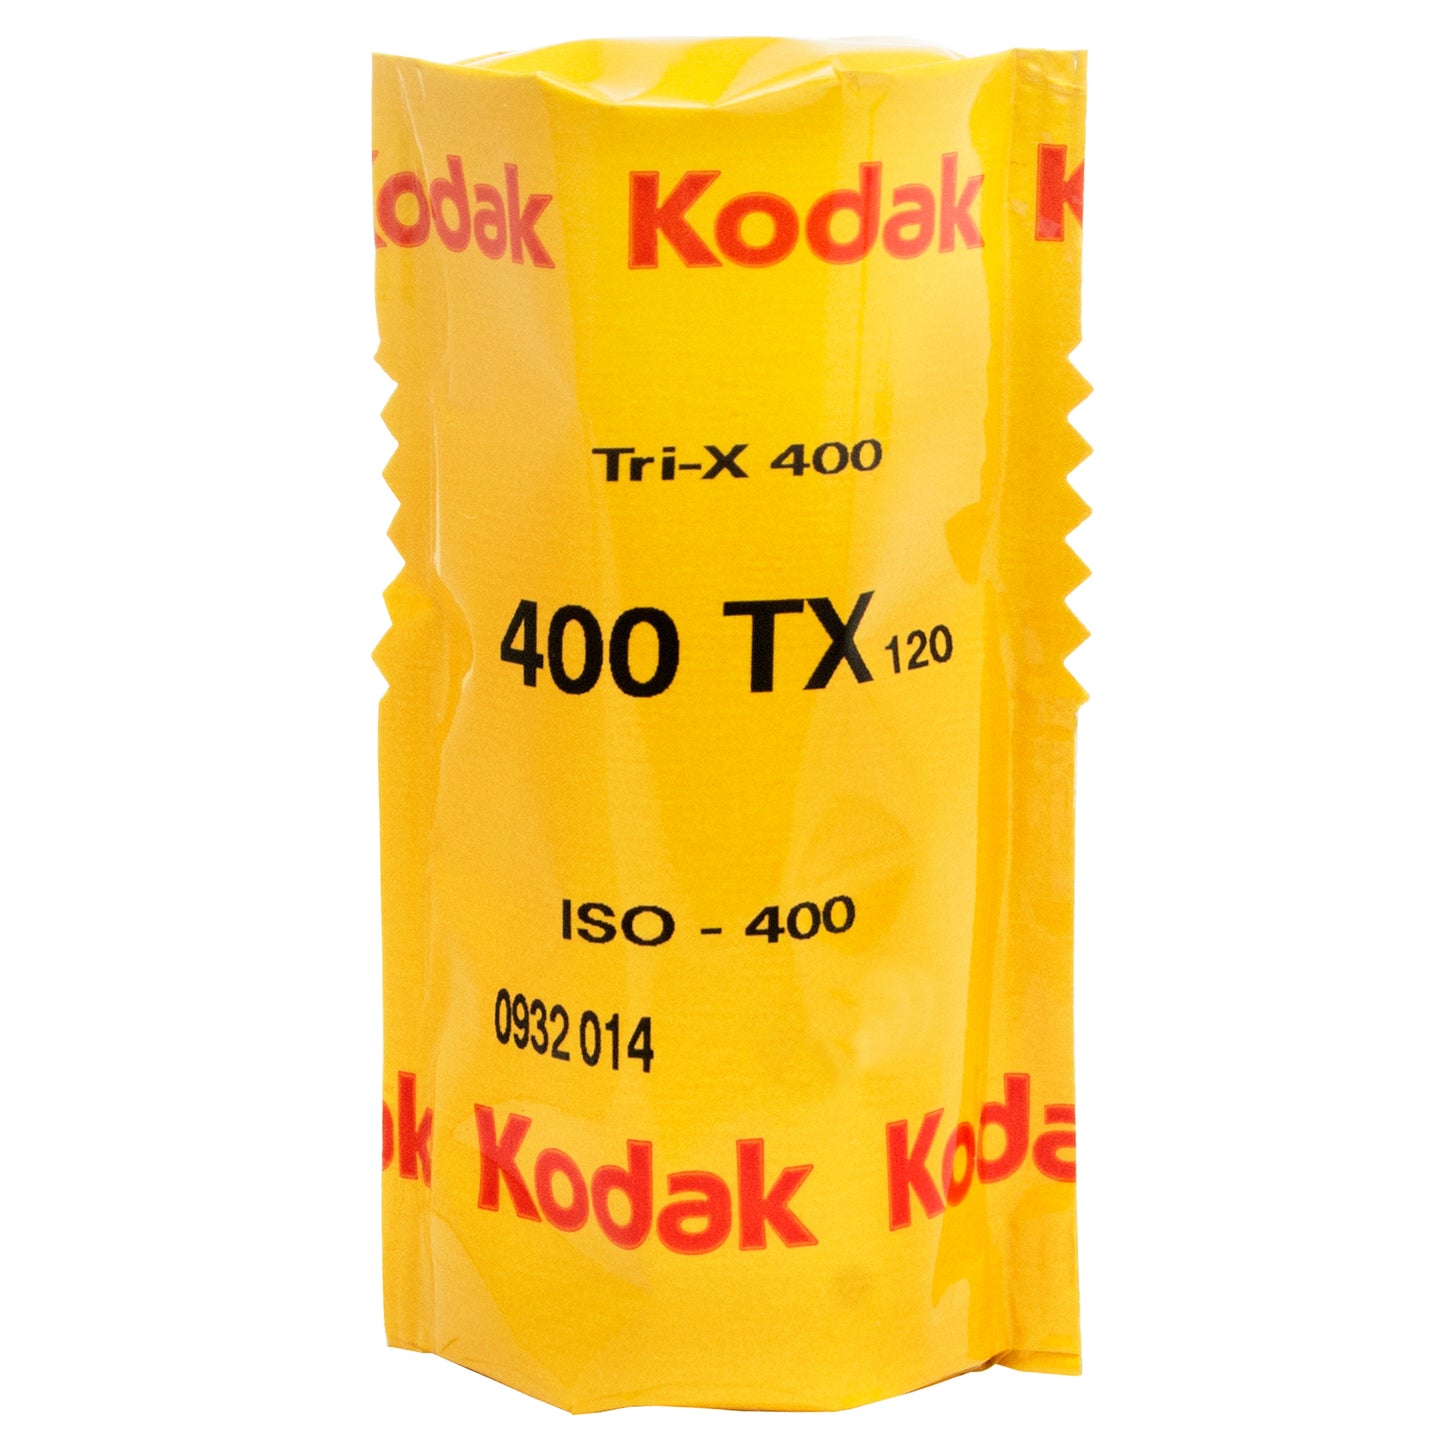 Kodak Professional Tri-X 400 | 120